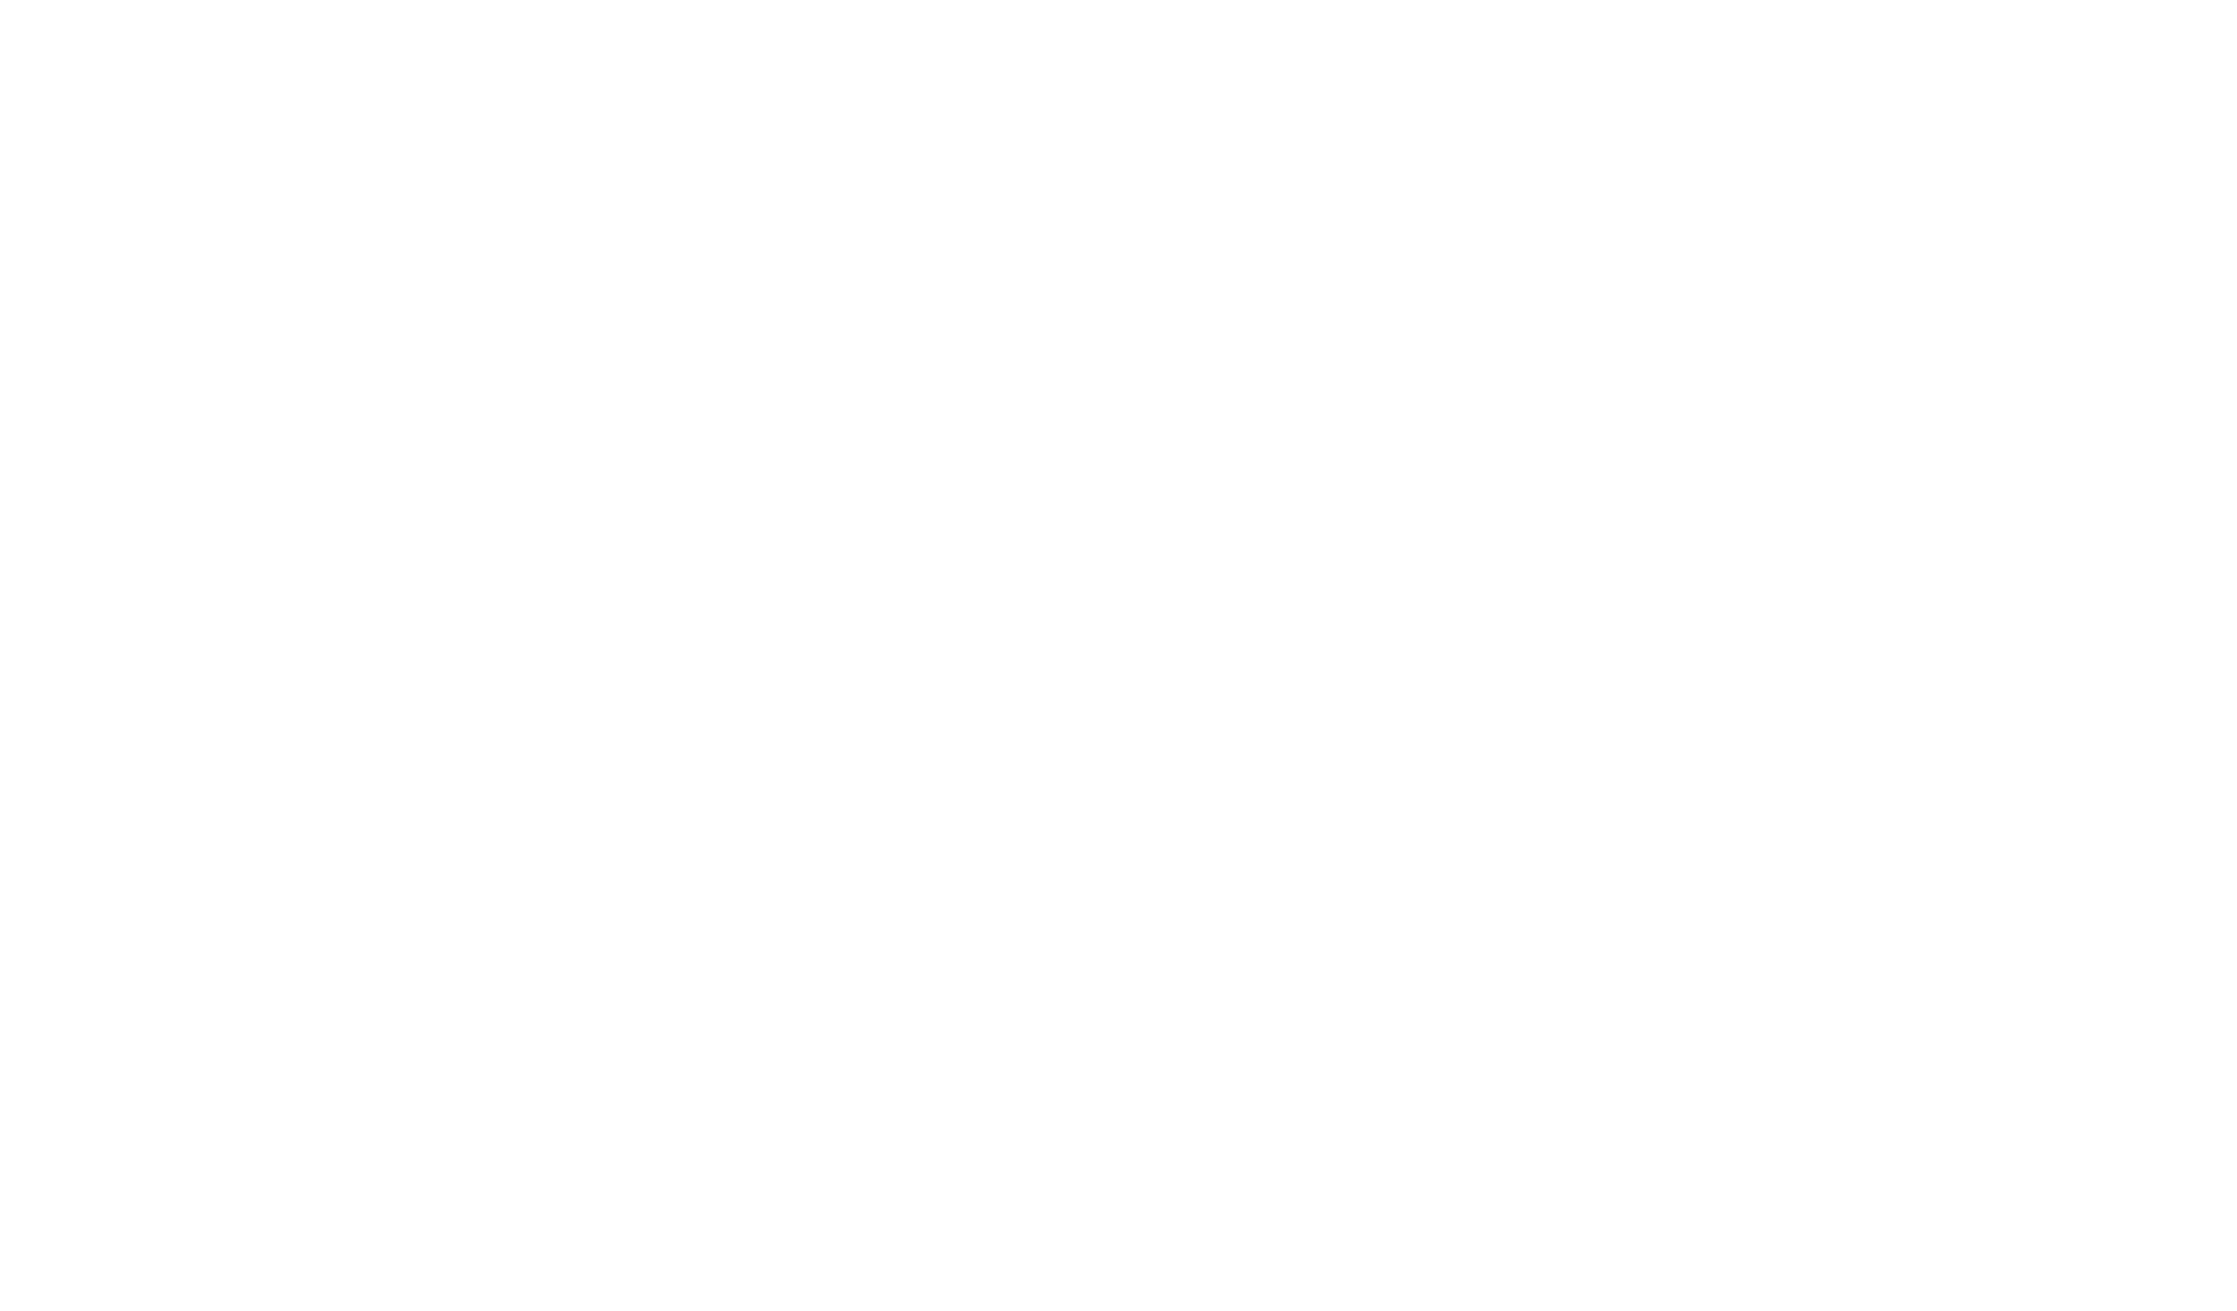 OVM Financial Logo